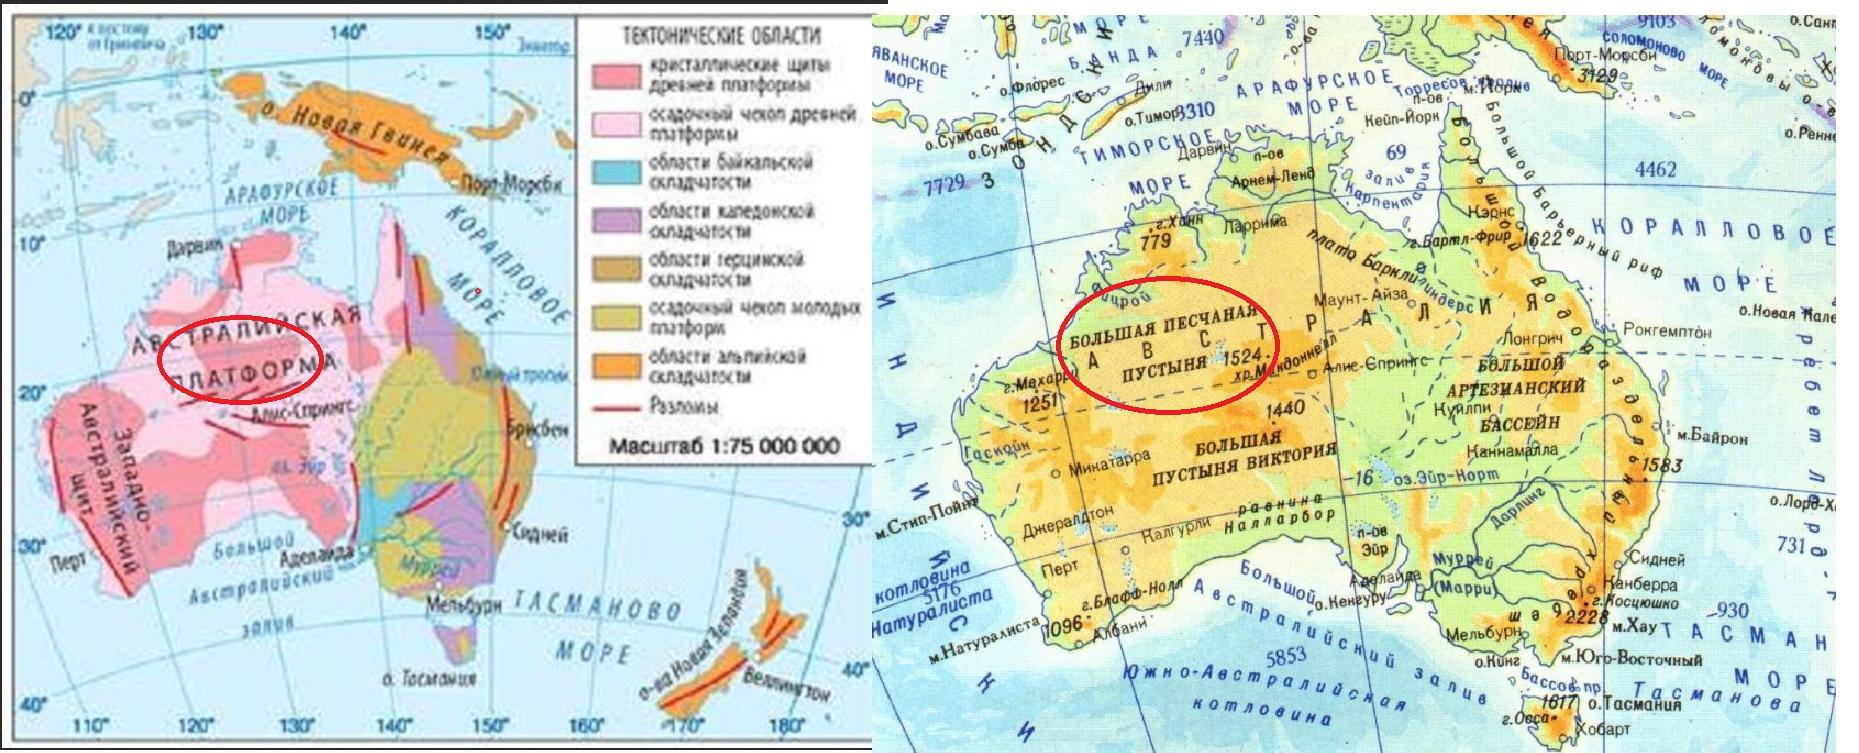 Щите древней платформы в рельефе австралии соответствует. Большой Водораздельный хребет в Австралии на карте. Формы рельефа Австралии на карте. Рельеф большой Водораздельный хребет на карте Австралии. Центральная низменность Австралии на карте.